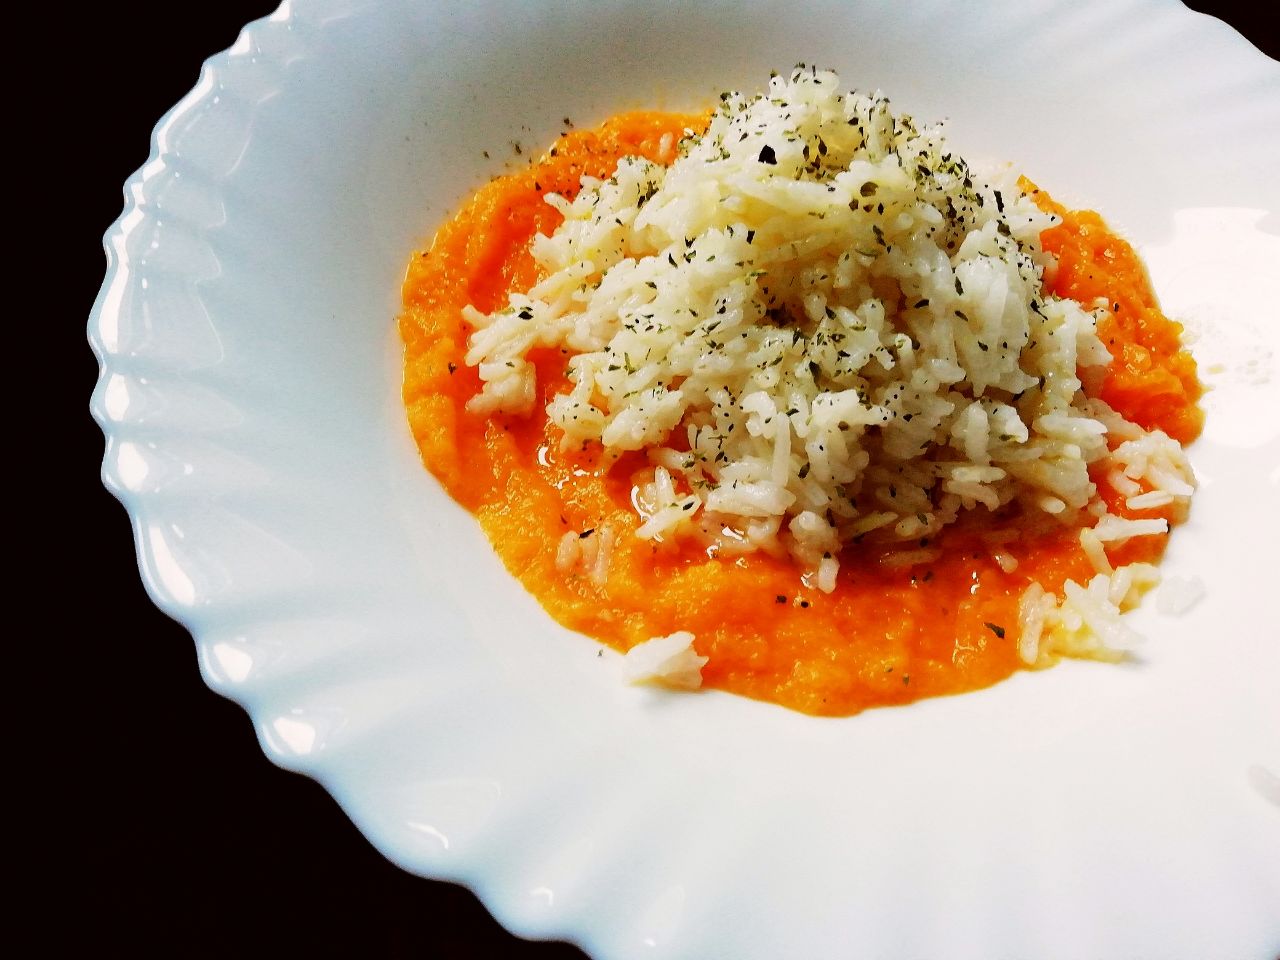 Primi piatti gluten free: riso basmati su crema di zucca, senza latte senza burro e senza formaggio!